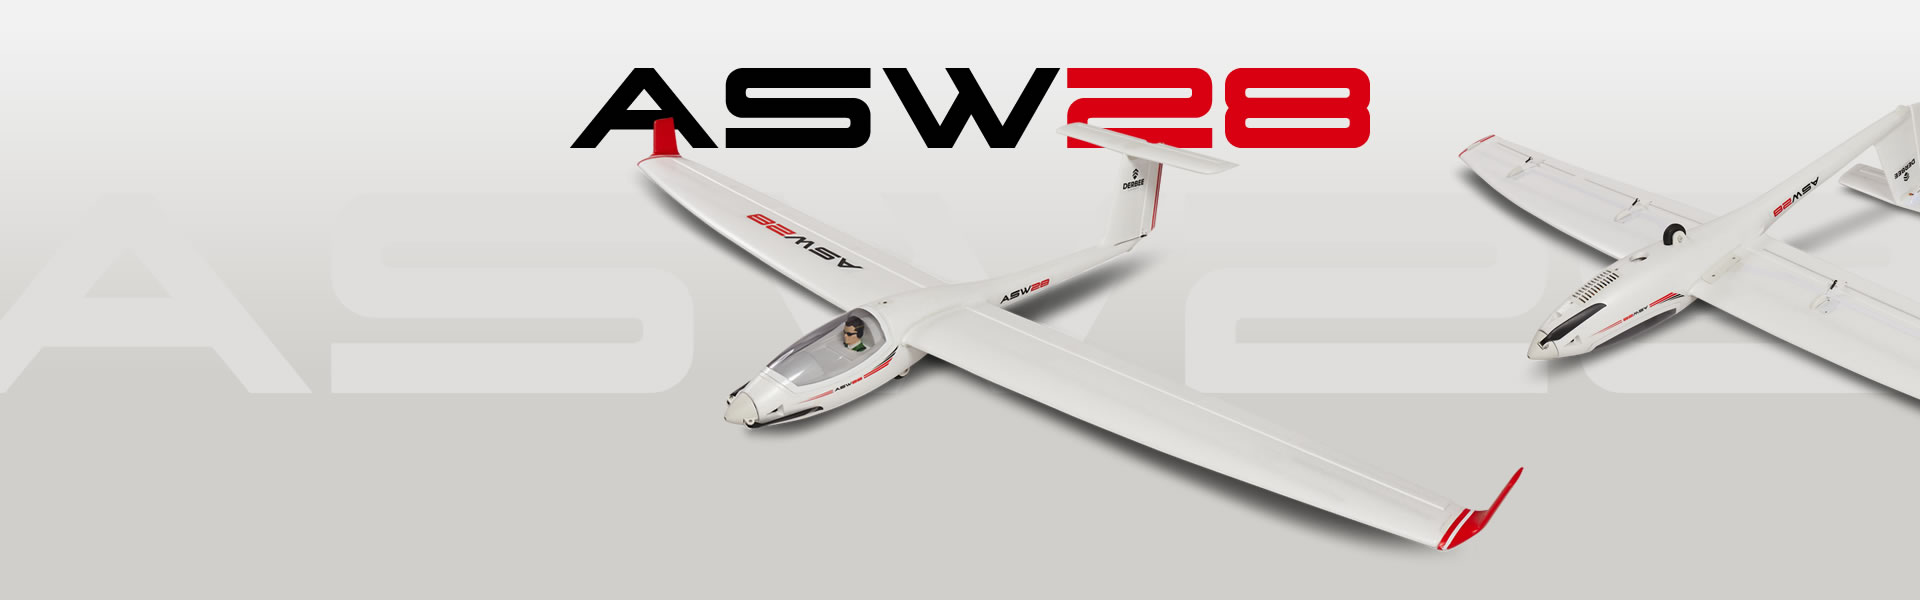 ASW-28 RC Flugzeug kaufen bei Modellbau Lindinger